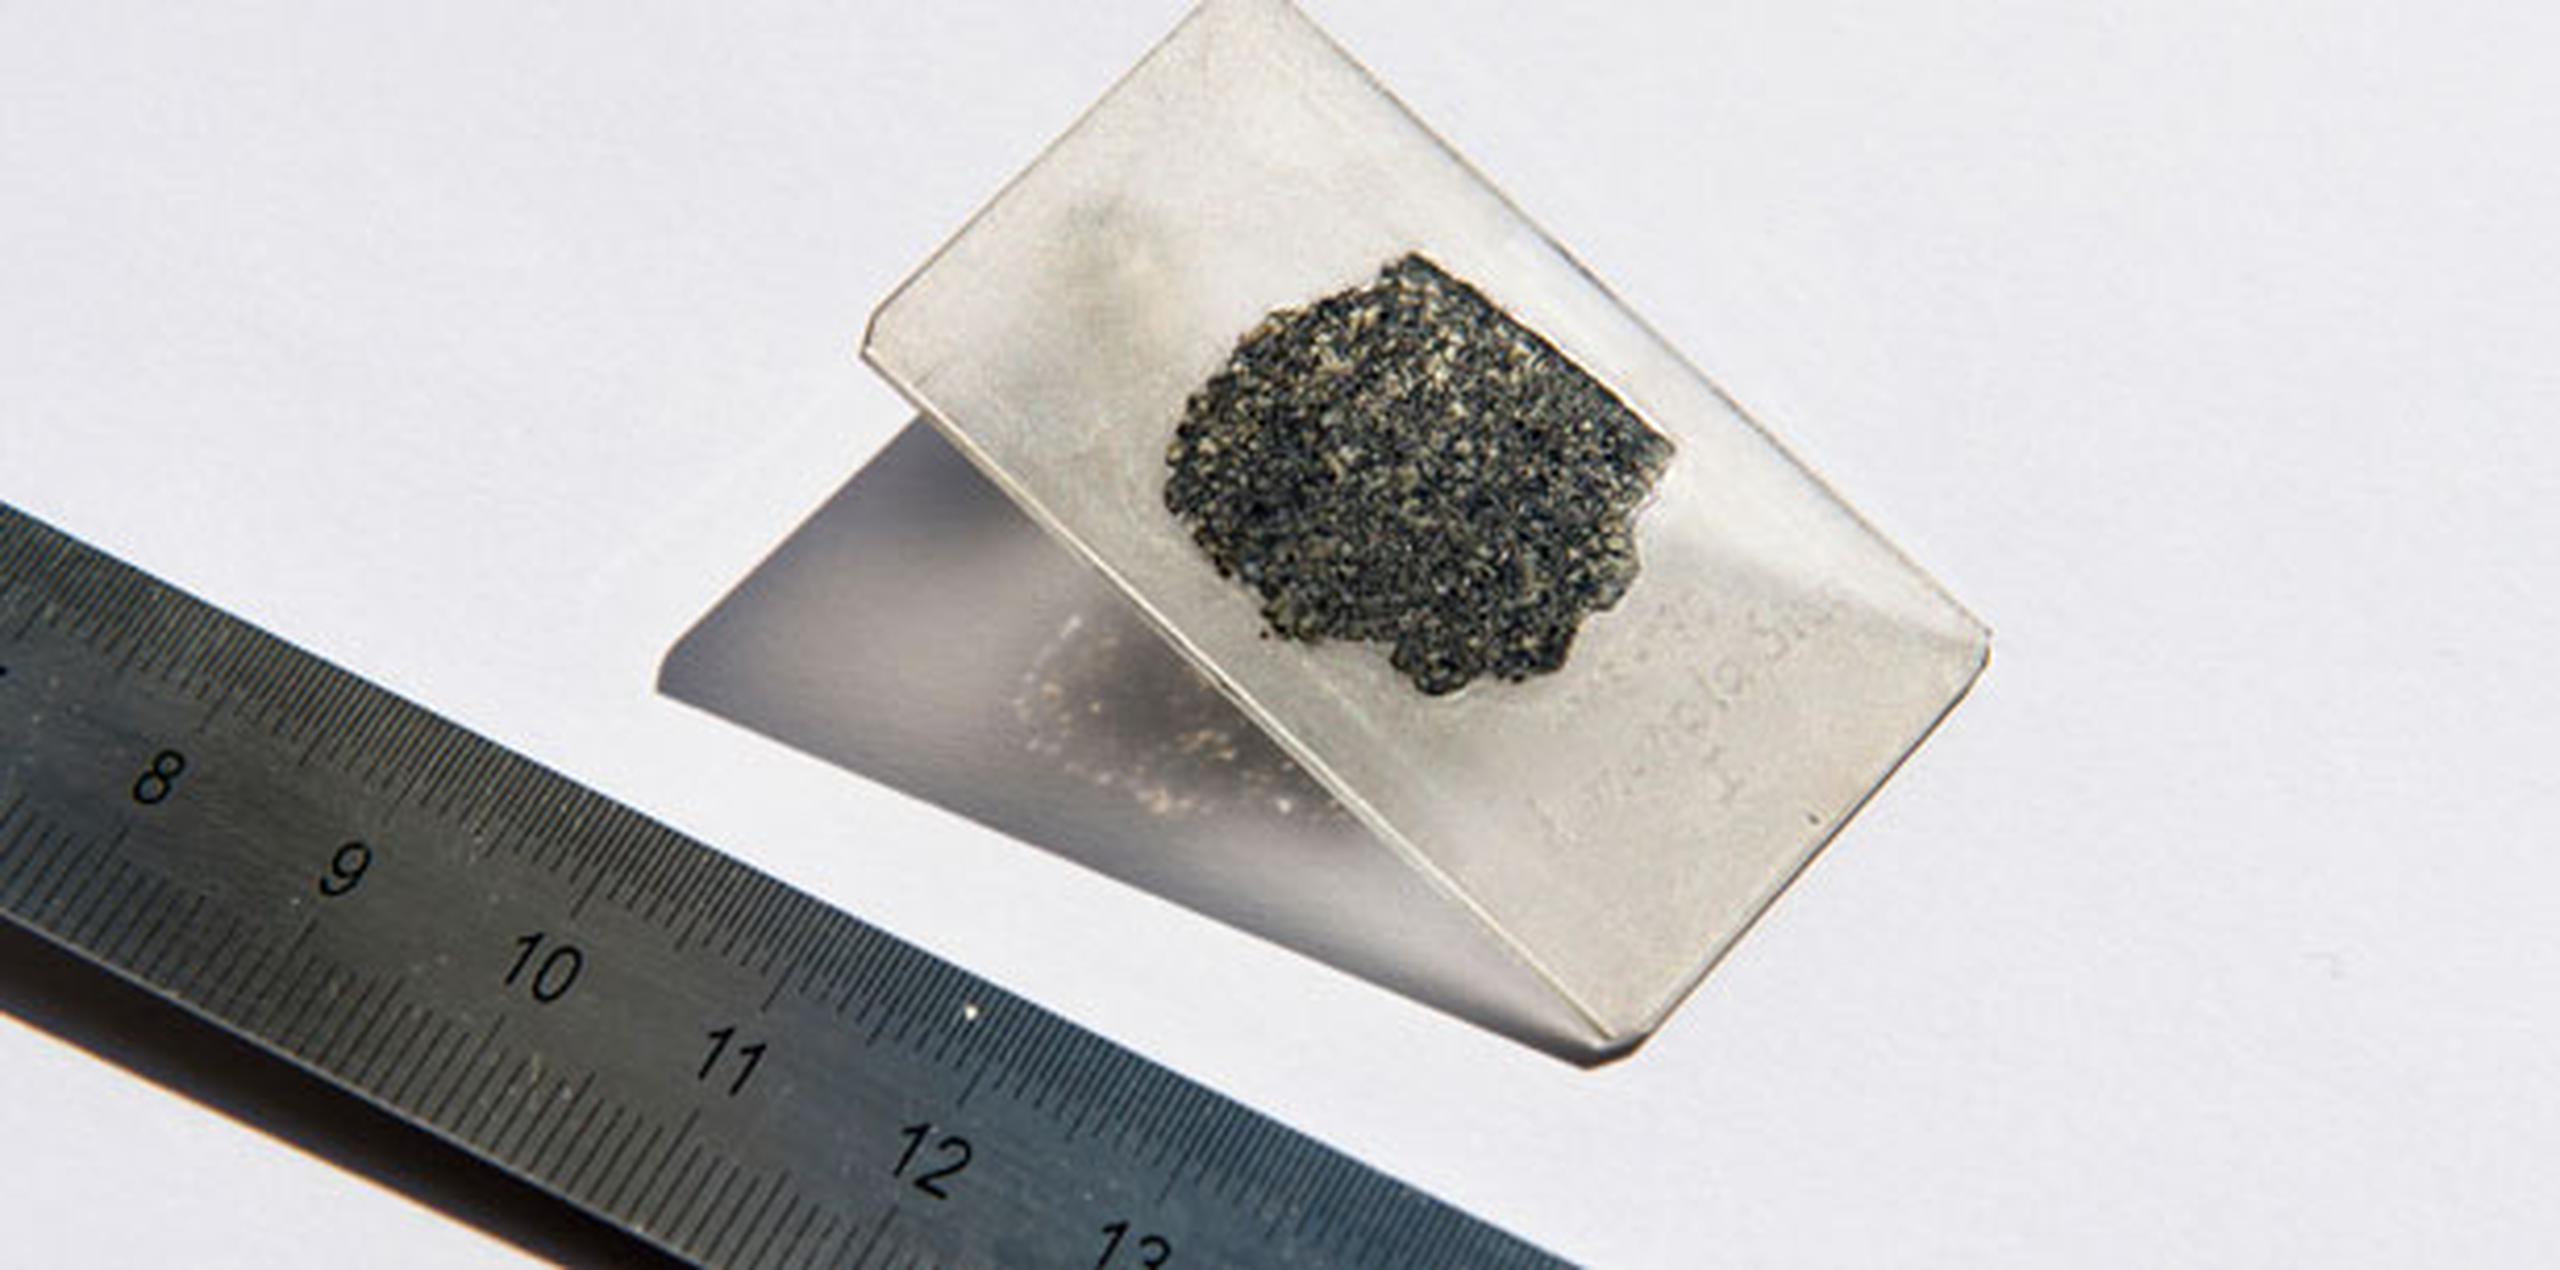 Científicos de Suiza, Francia y Alemania examinaron diamantes hallados dentro del meteorito Almahata Sitta. (AP)